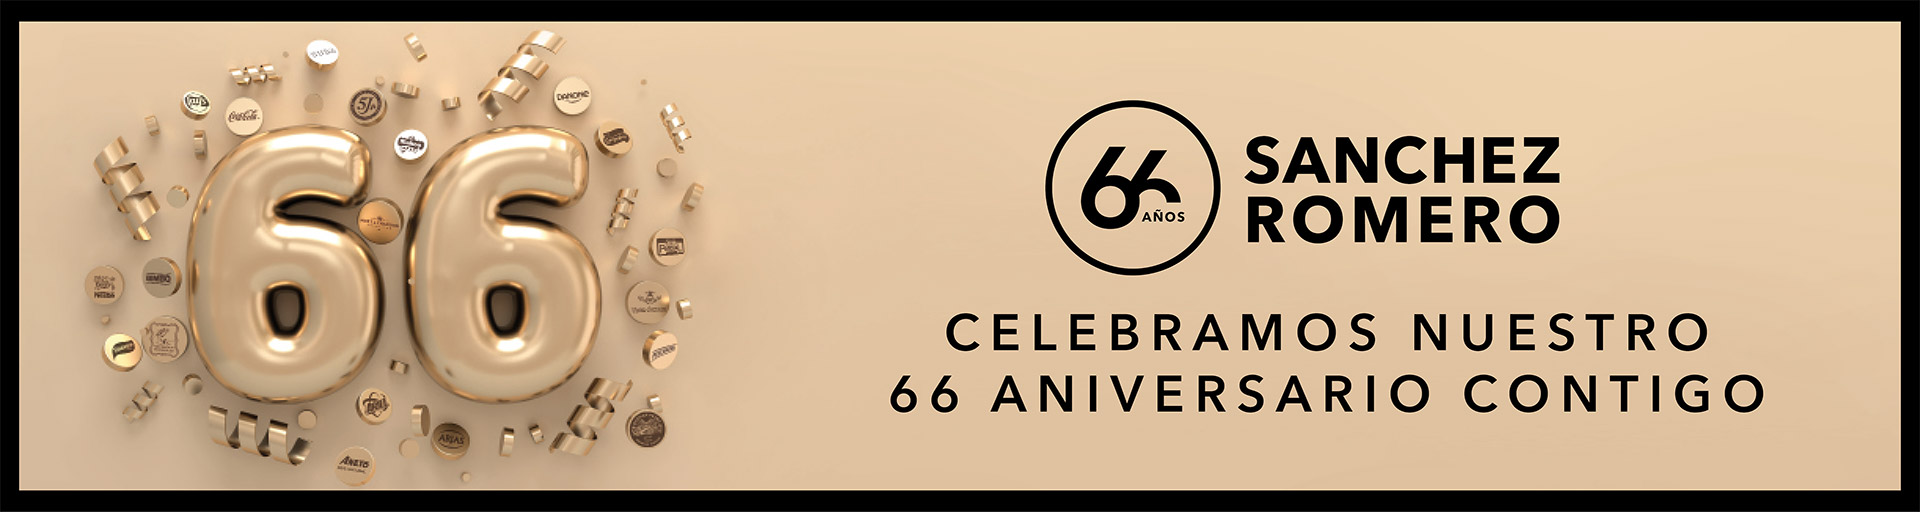 Celebramos nuestro 66 aniversario contigo